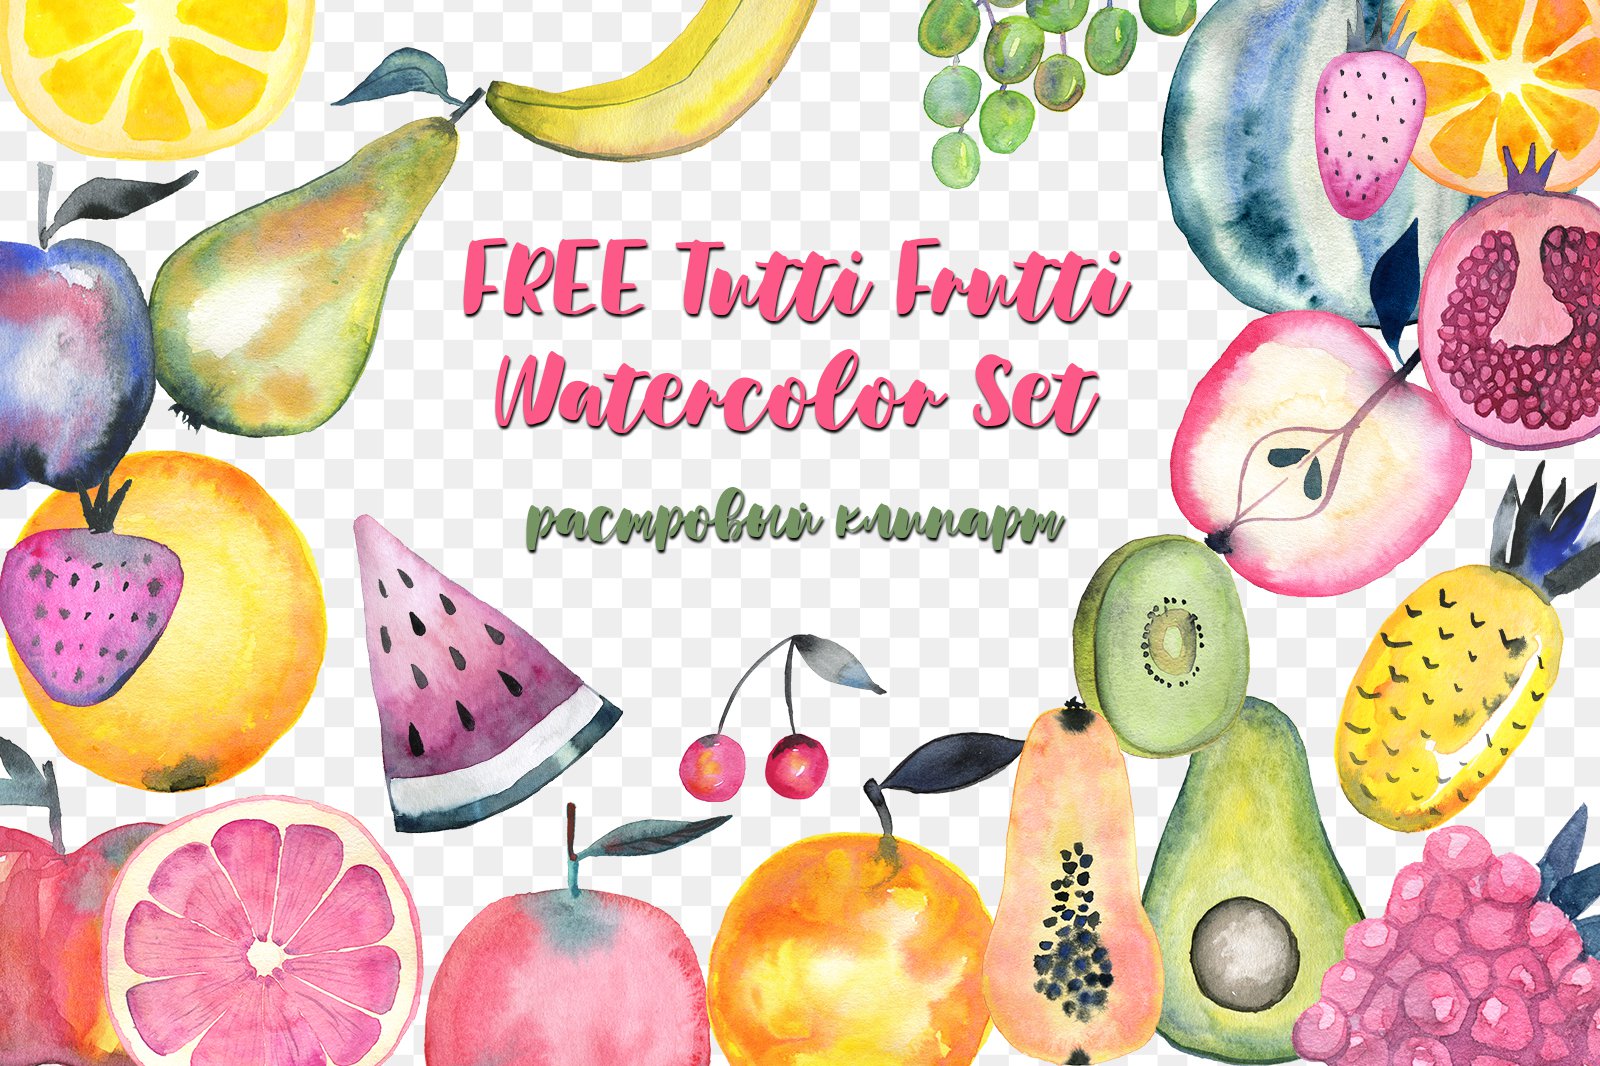 FREE Tutti Frutti Watercolor Set растровый клипарт скачать бесплатно